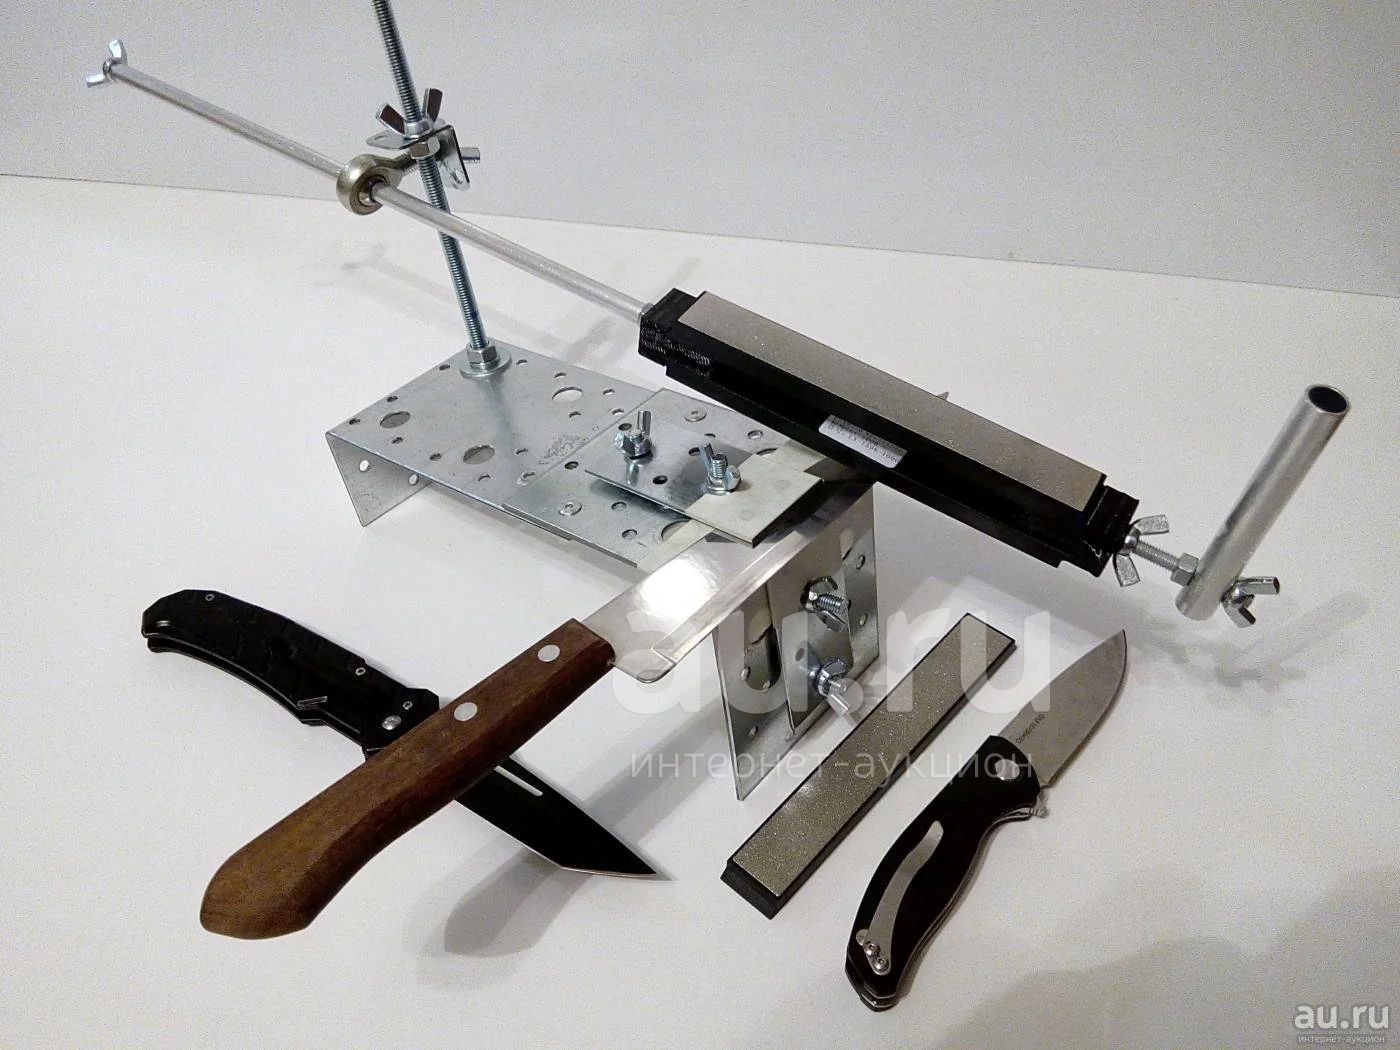 Ножевой станок. Ножеточка иж1. Wg250-h приспособление для заточки ножей. Заточной станок для ножей своими руками. Самодельные точила для ножей.